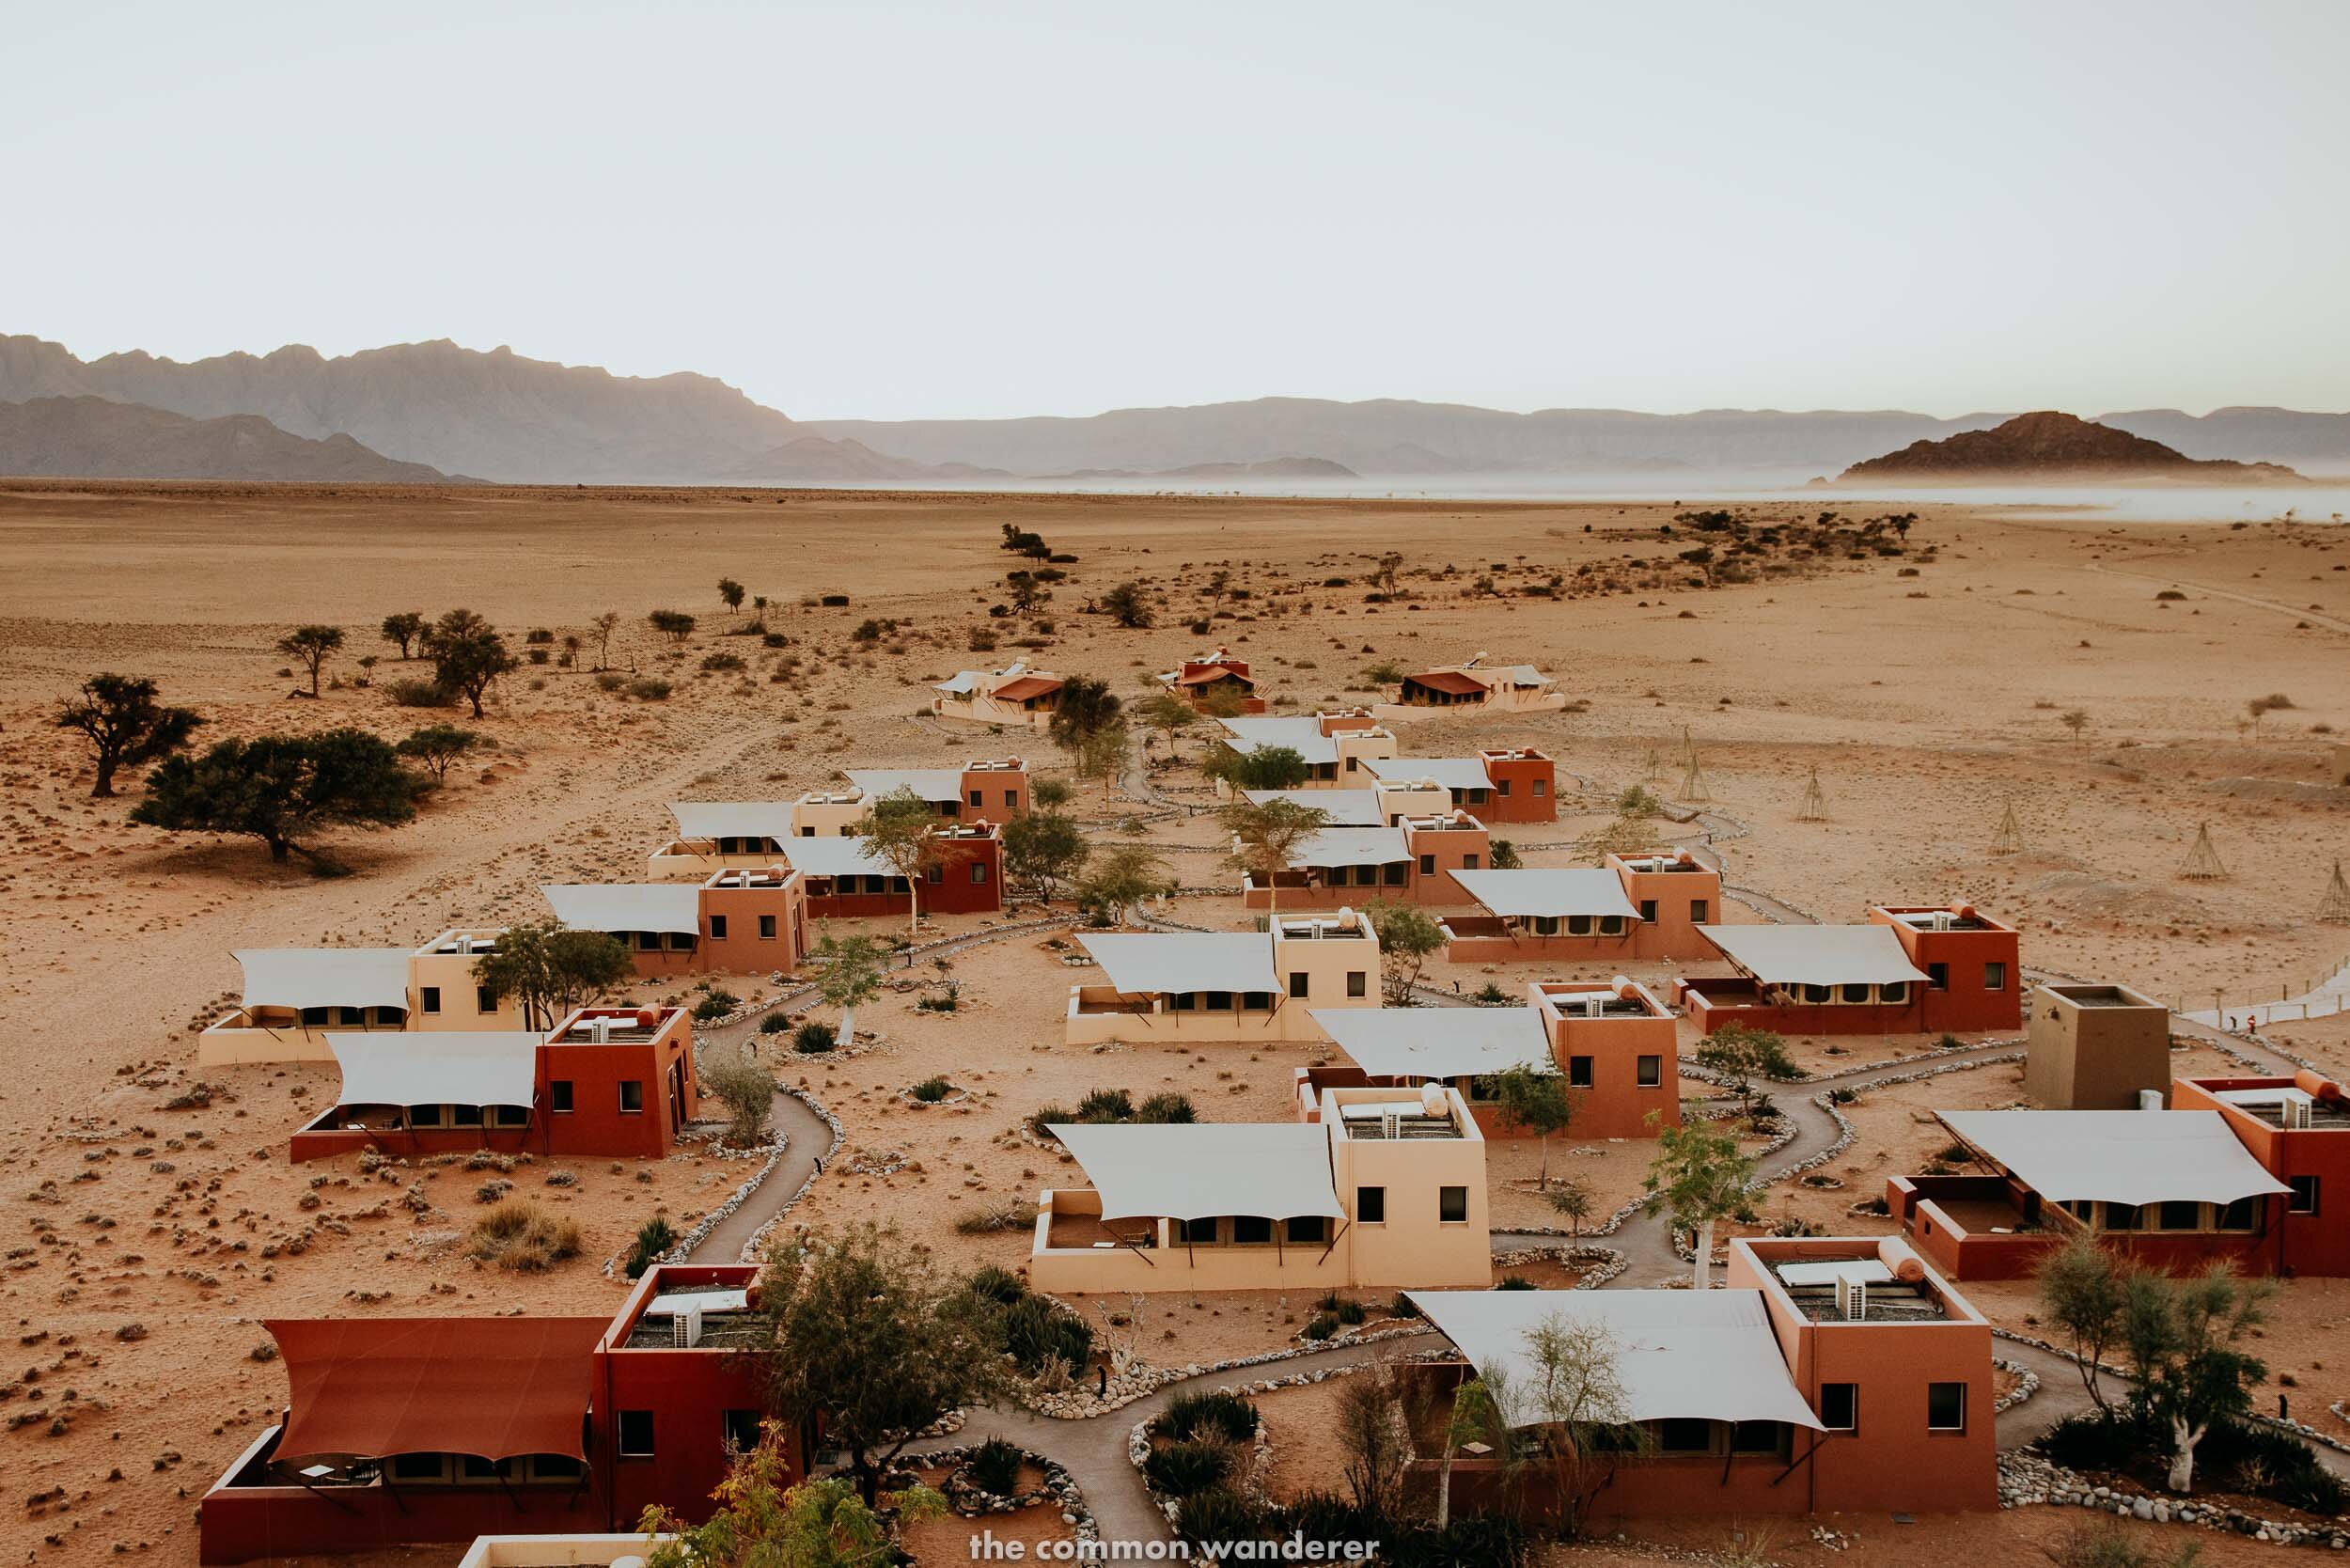 Accommodation in Sesreim, Sossusvlei - Namibia travel tips